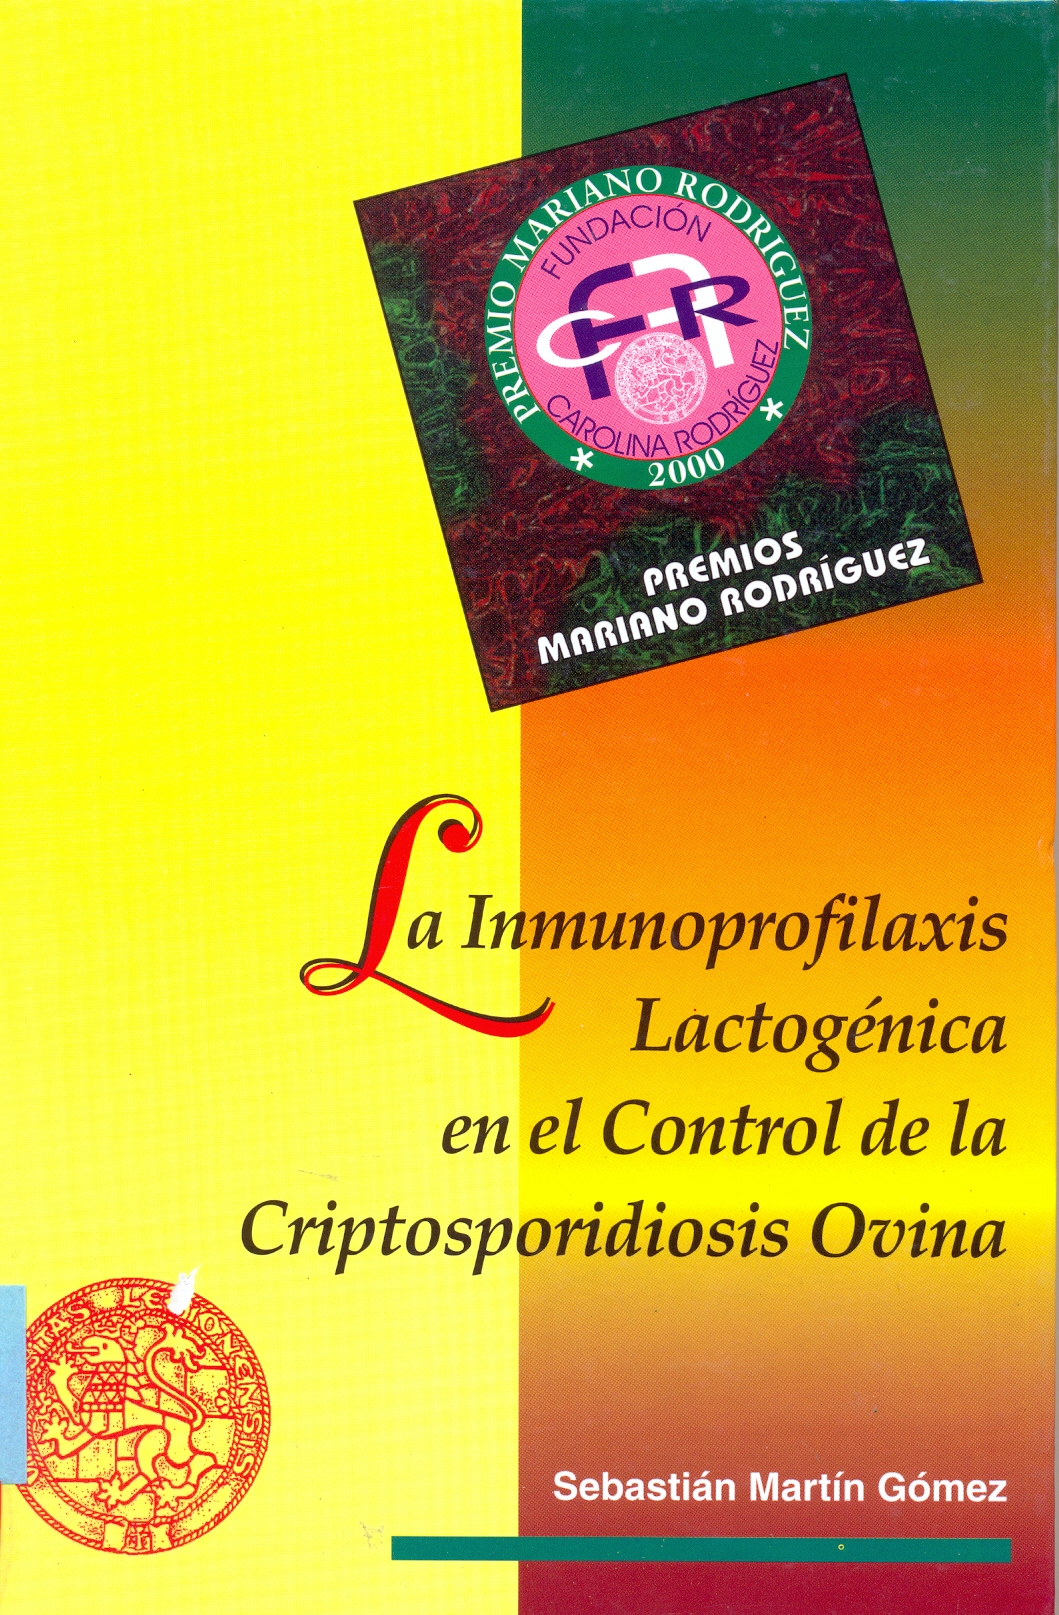 Imagen de portada del libro La inmunoprofilaxis lactogénica en el control de la criptosporidiosis ovina